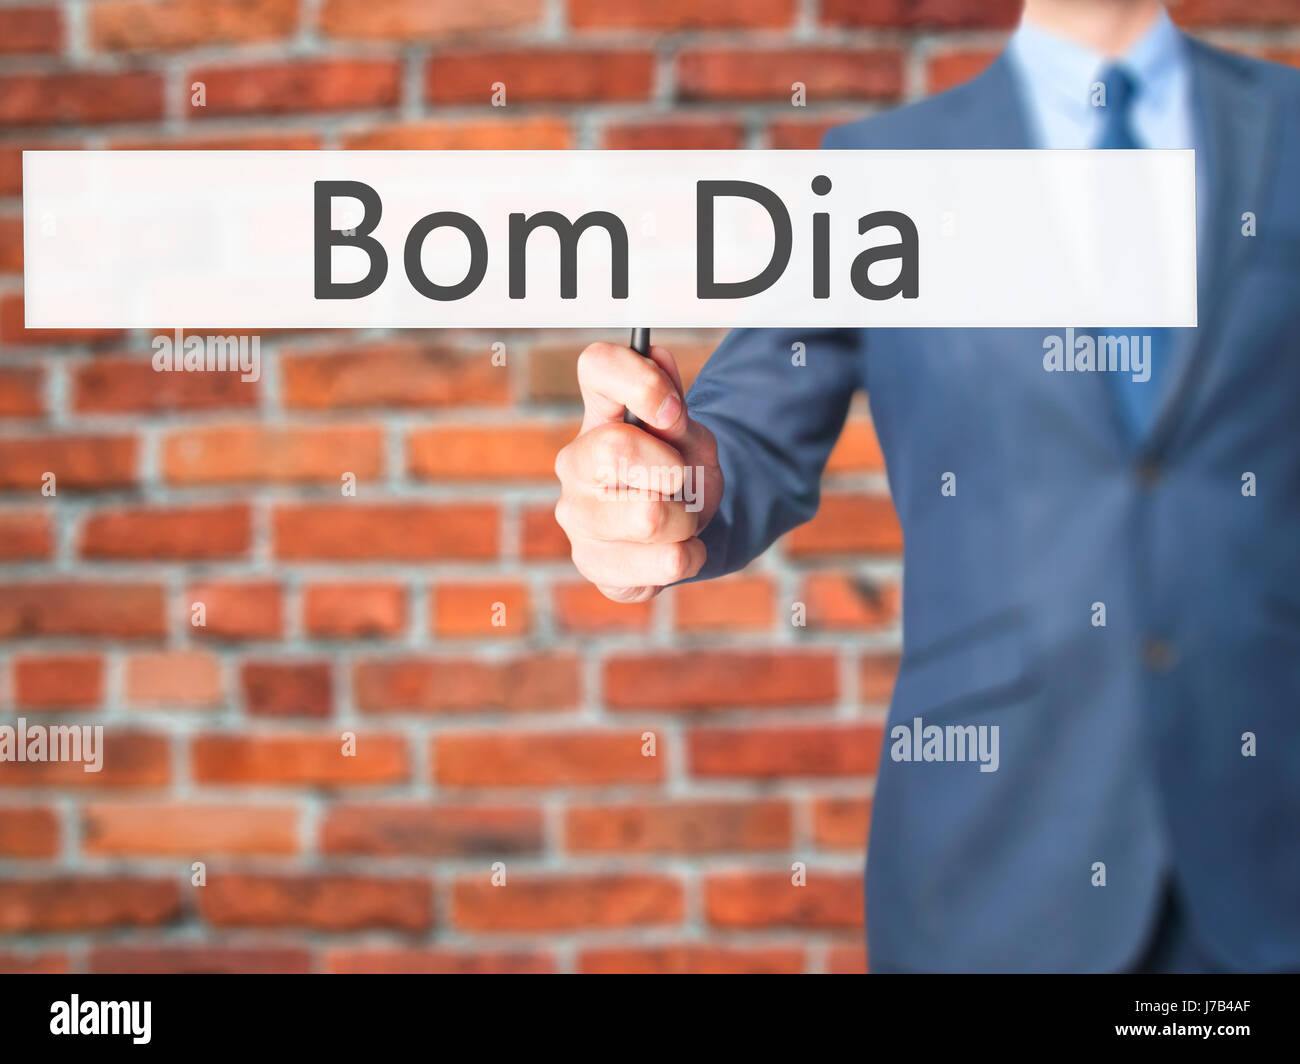 Bom Dia (en portugués: Buenos días) - El empresario mano sujetando firme.  Negocios, tecnología, internet concepto. Stock Photo Fotografía de stock -  Alamy